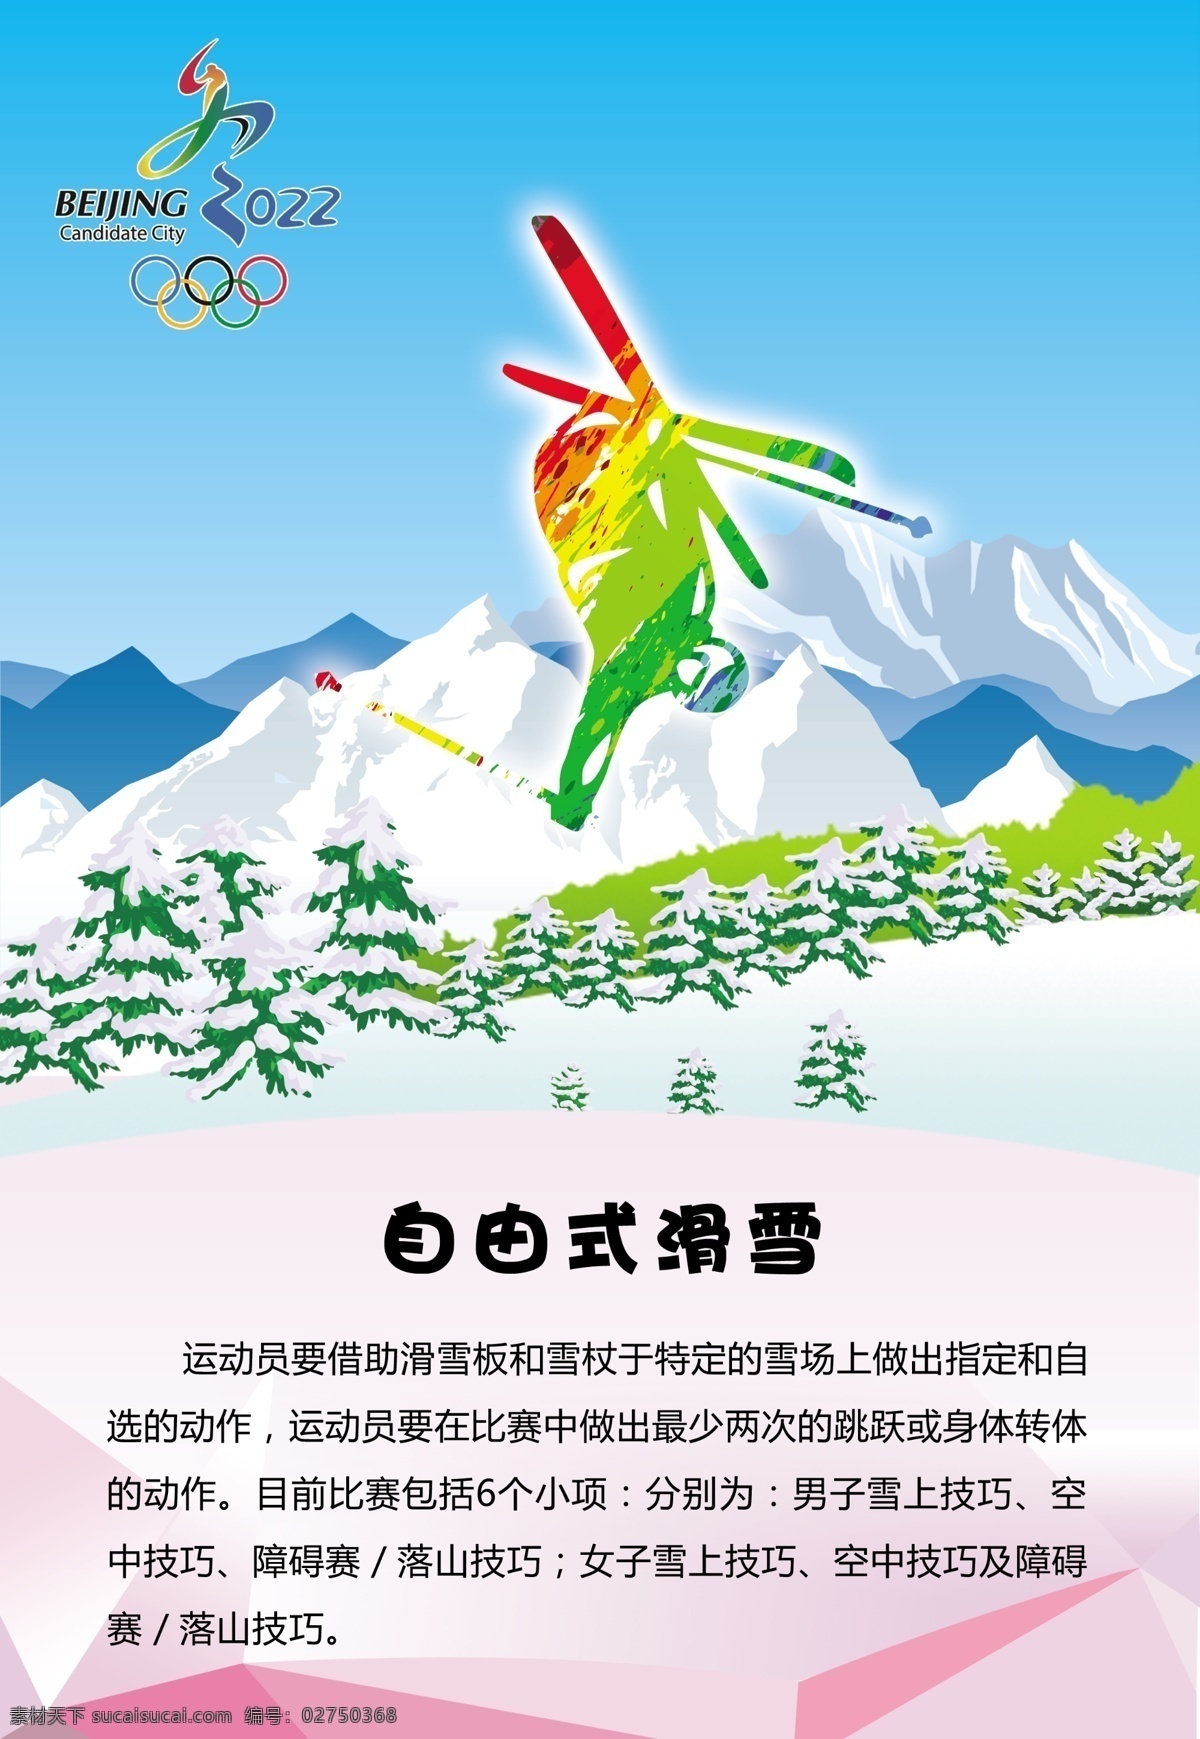 自由式滑雪 冬奥 雪山 松树 奥运 体育 运动